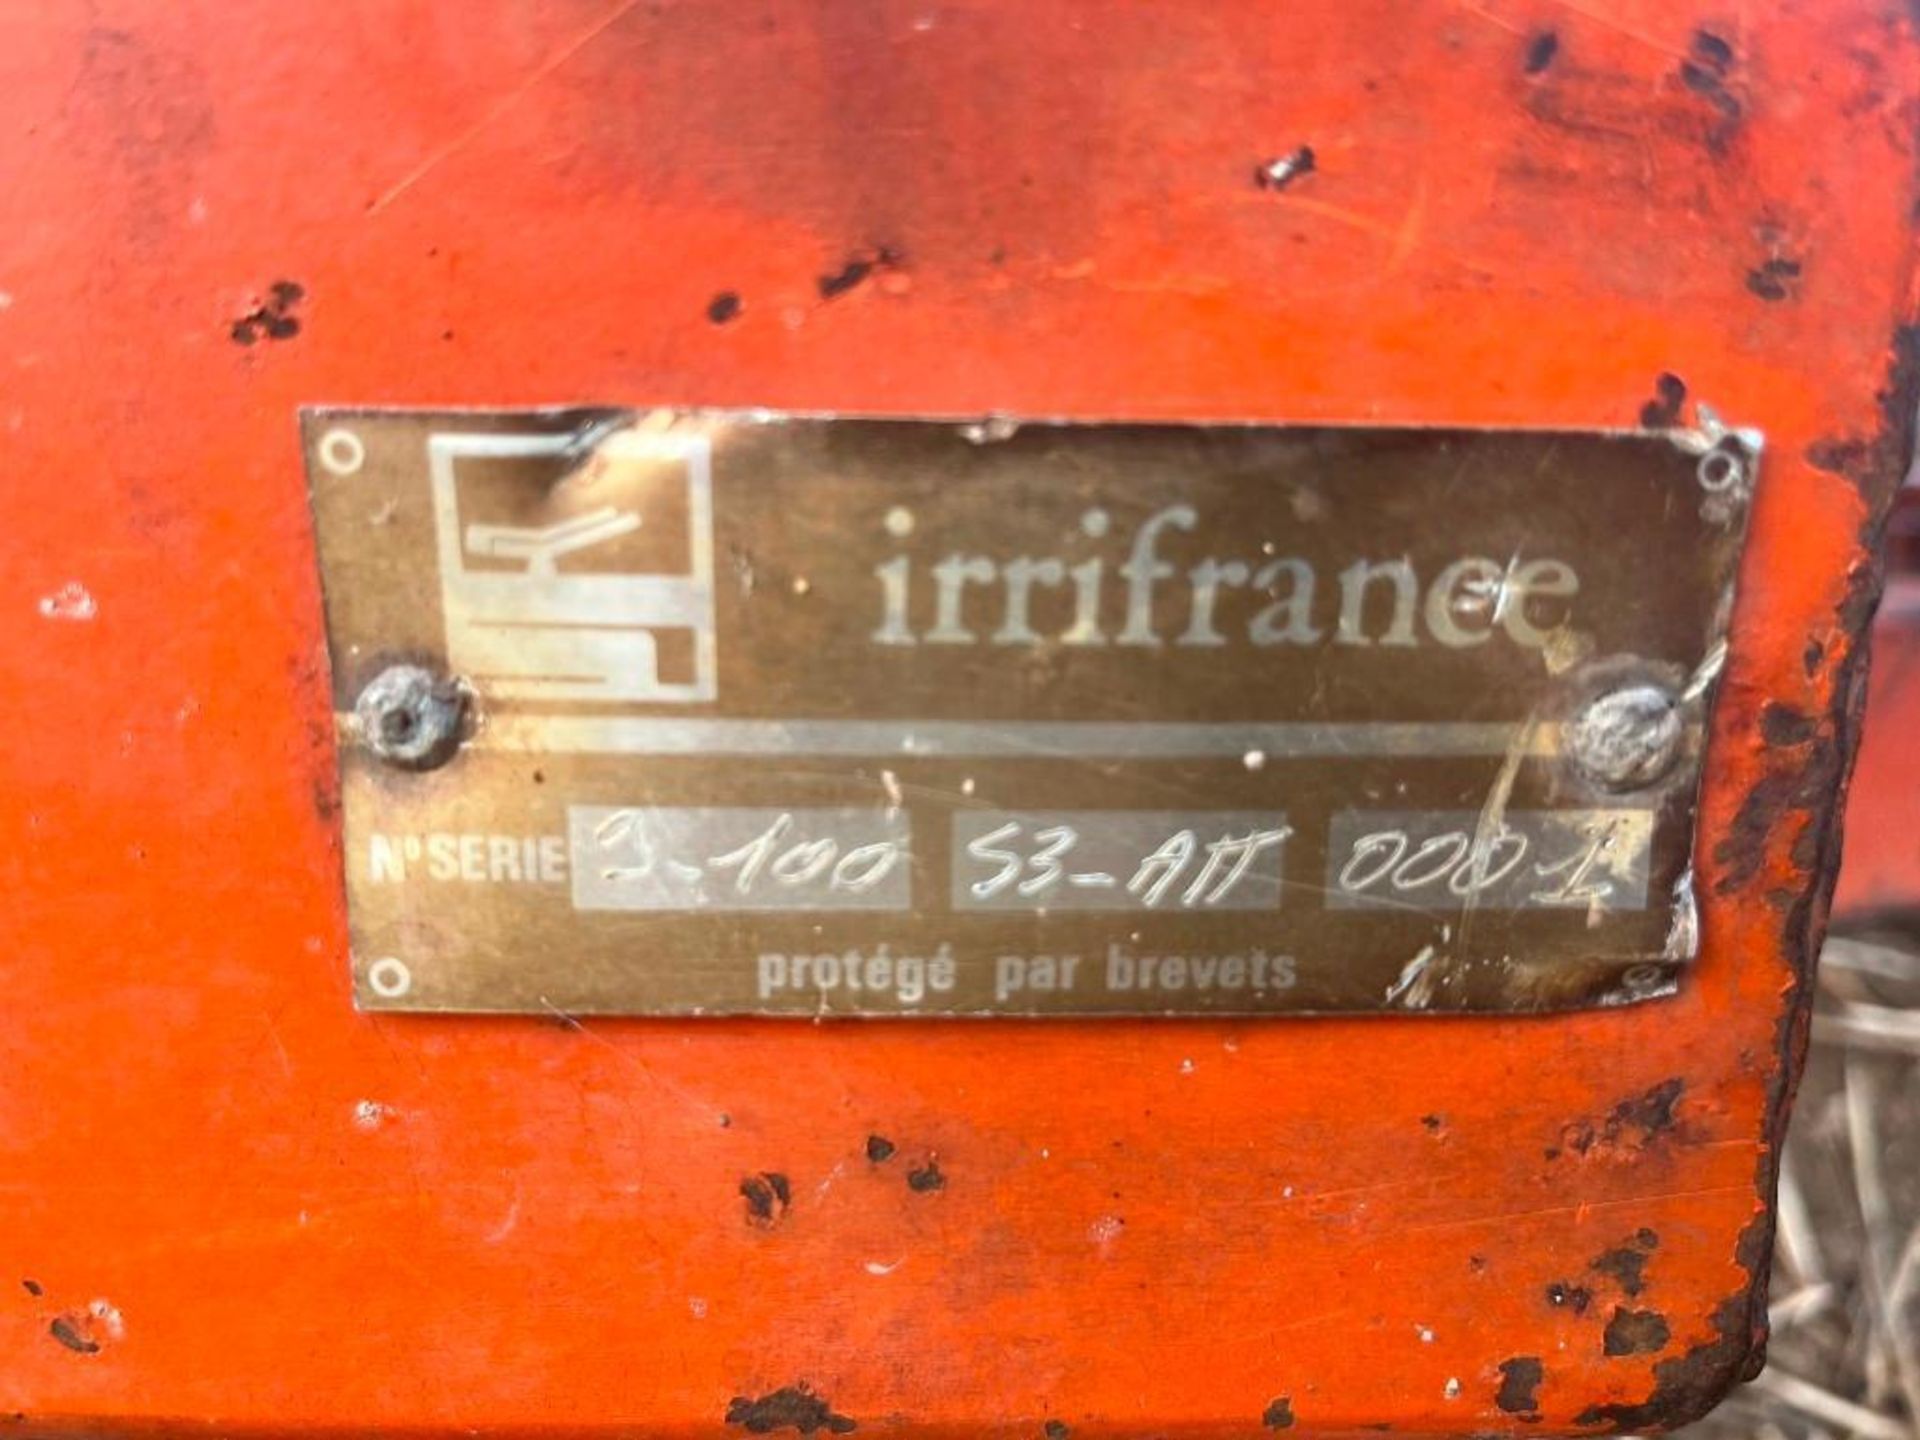 Irrifrance Irrigator - Image 7 of 7